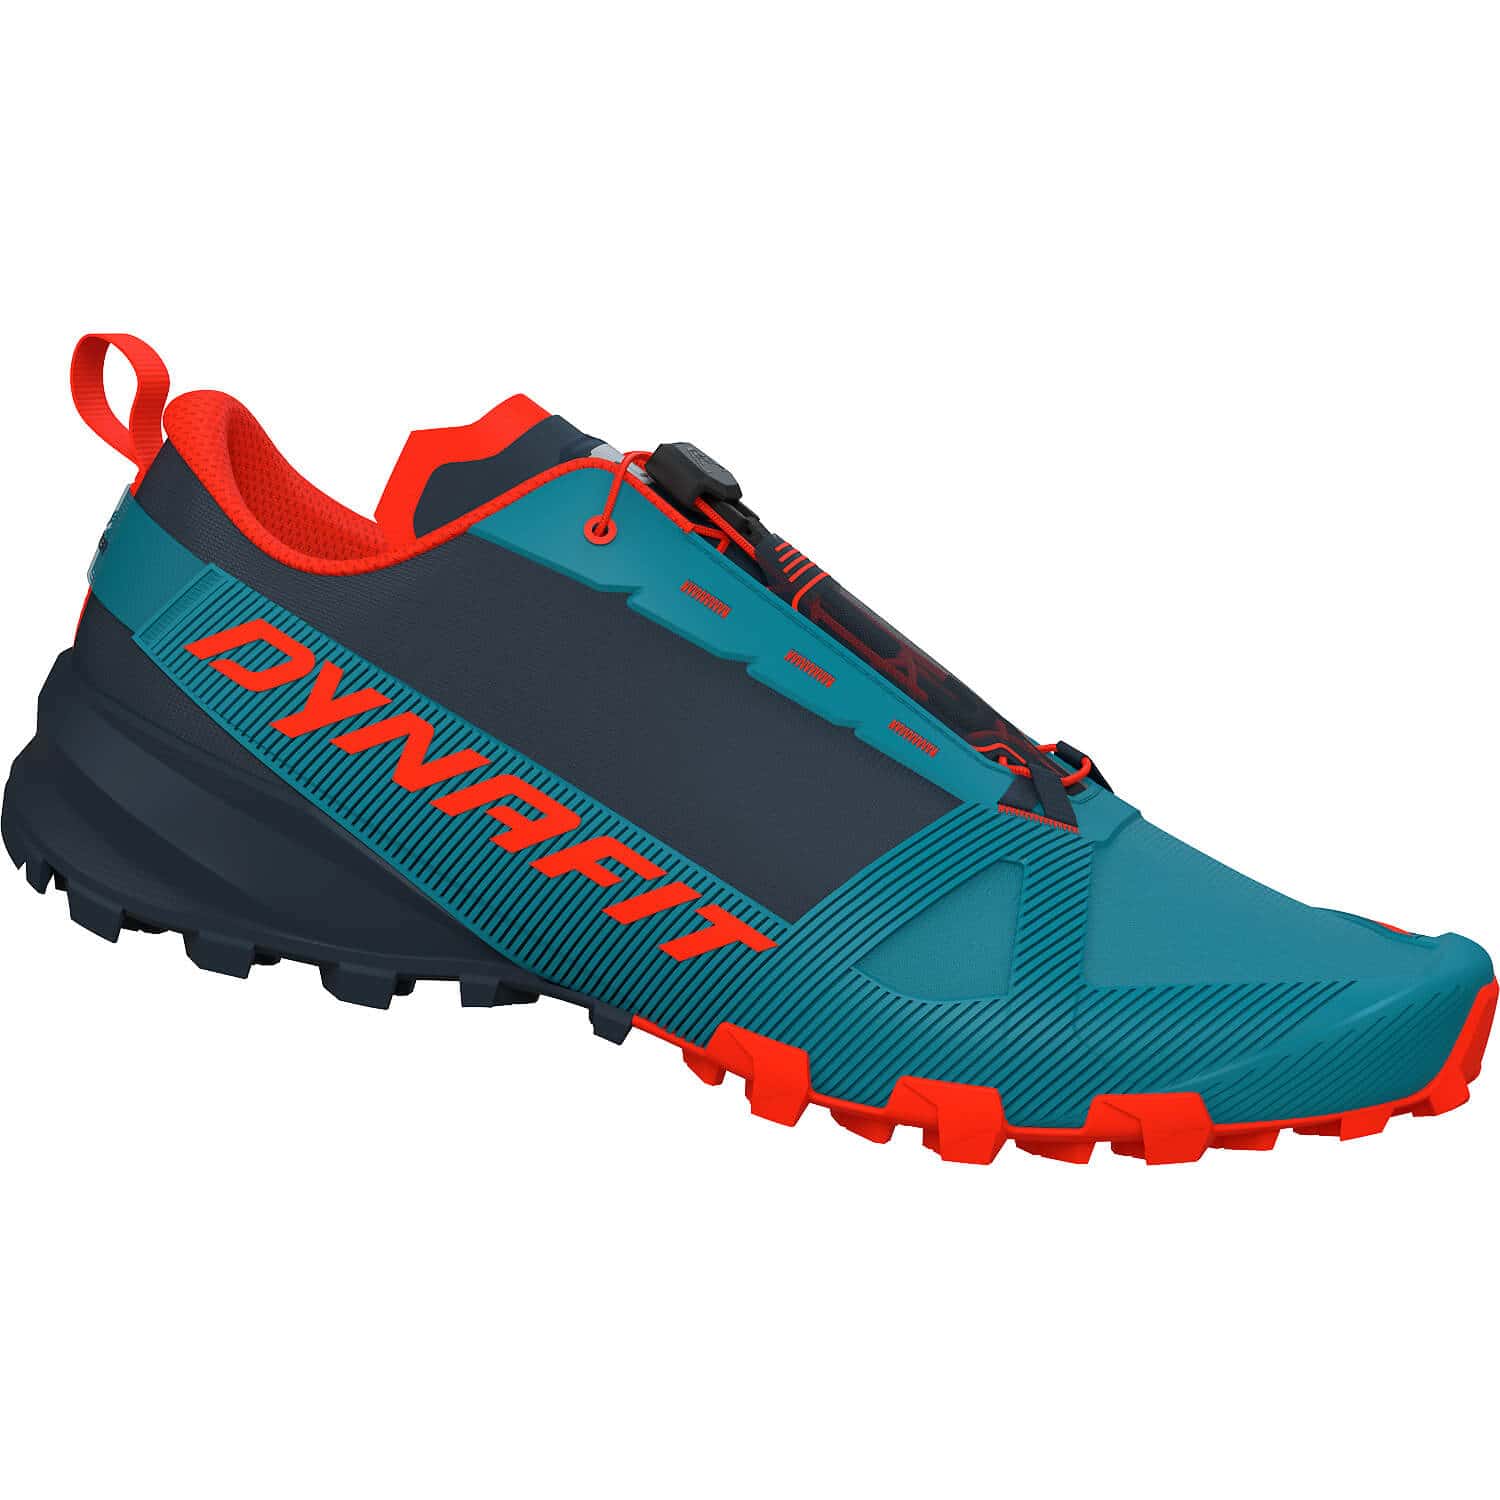 Herren Dynafit Trailrunning-Schuh Traverse